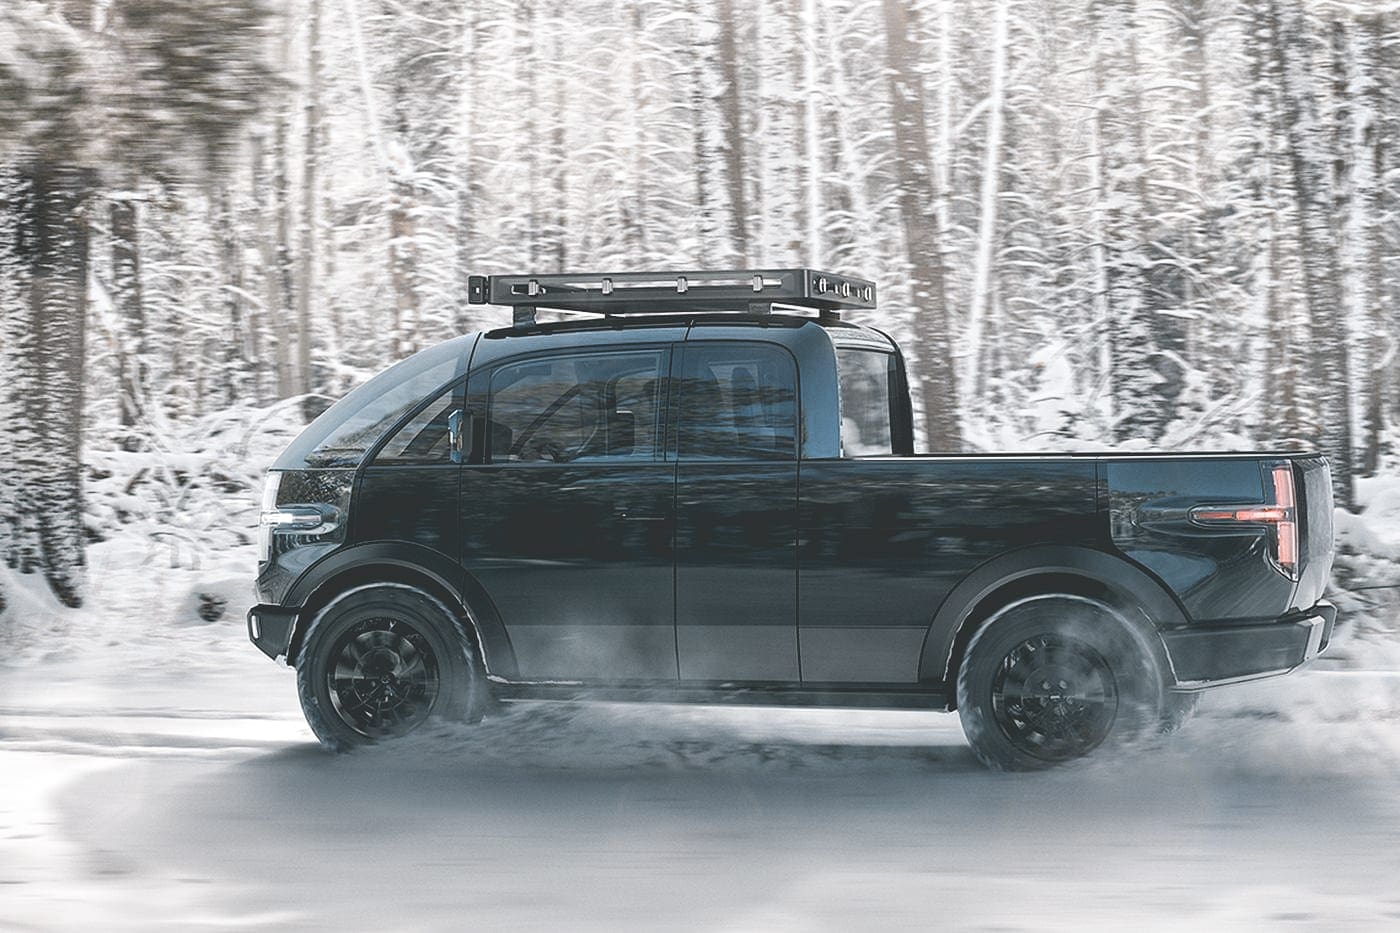 Canoo's nieuwe pick-up, Dit 600 pk sterke monster is een pick-up truck en camper in een